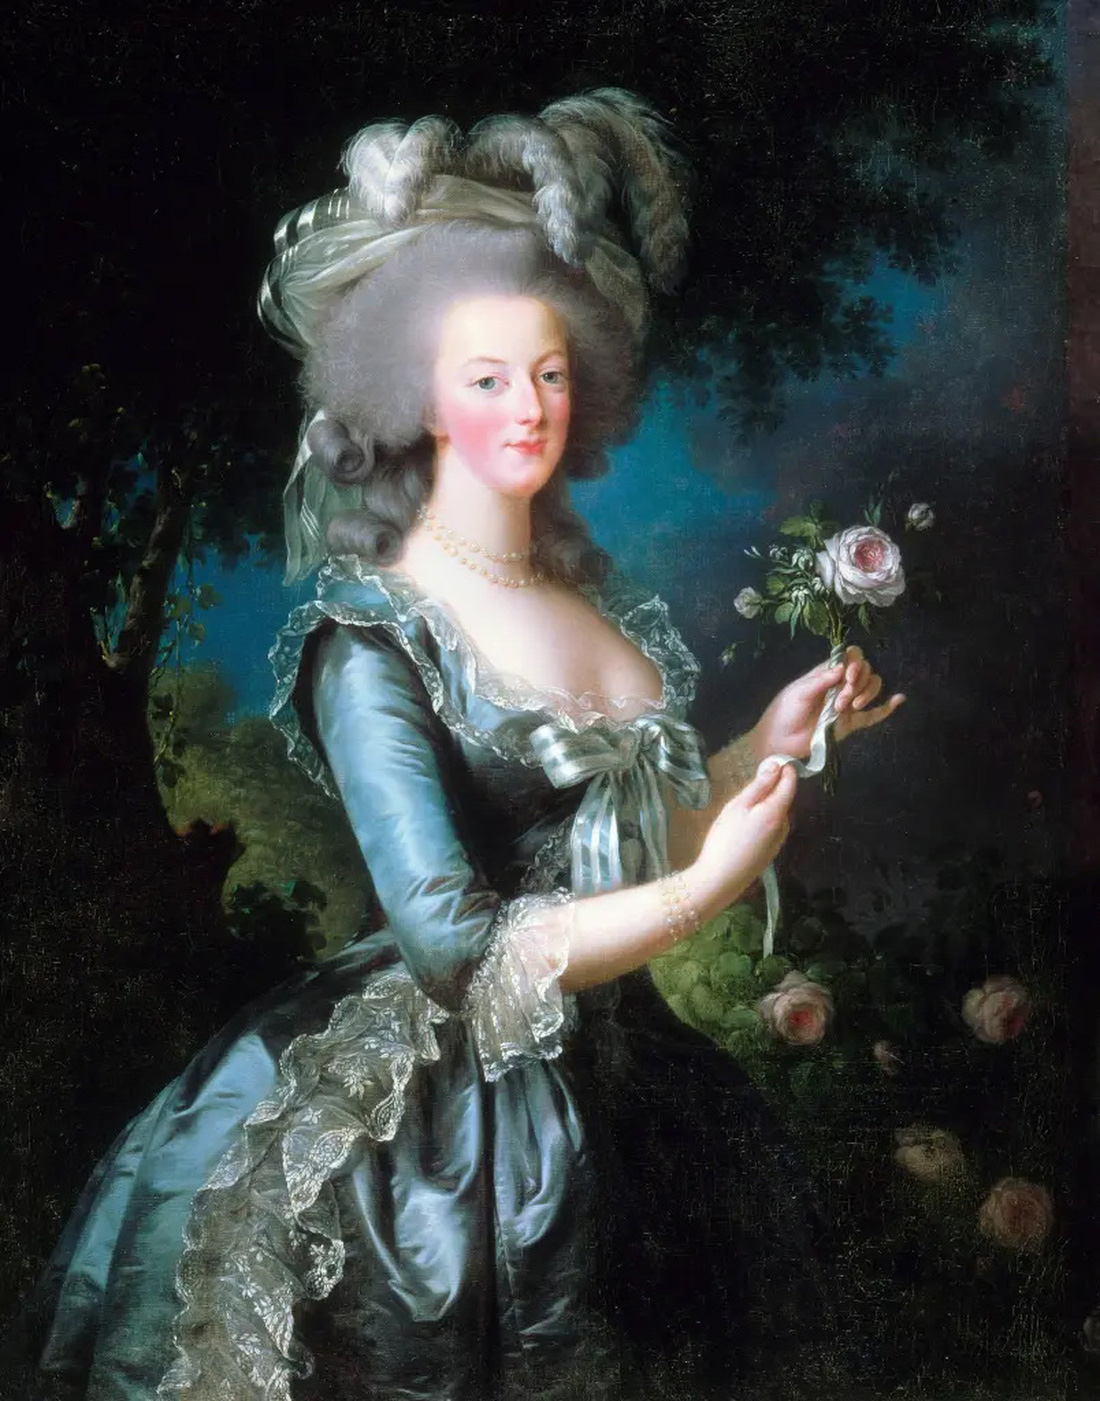 Chiêm ngưỡng căn hộ bí ẩn của hoàng hậu Pháp cuối cùng Marie Antoinette - Ảnh 5.